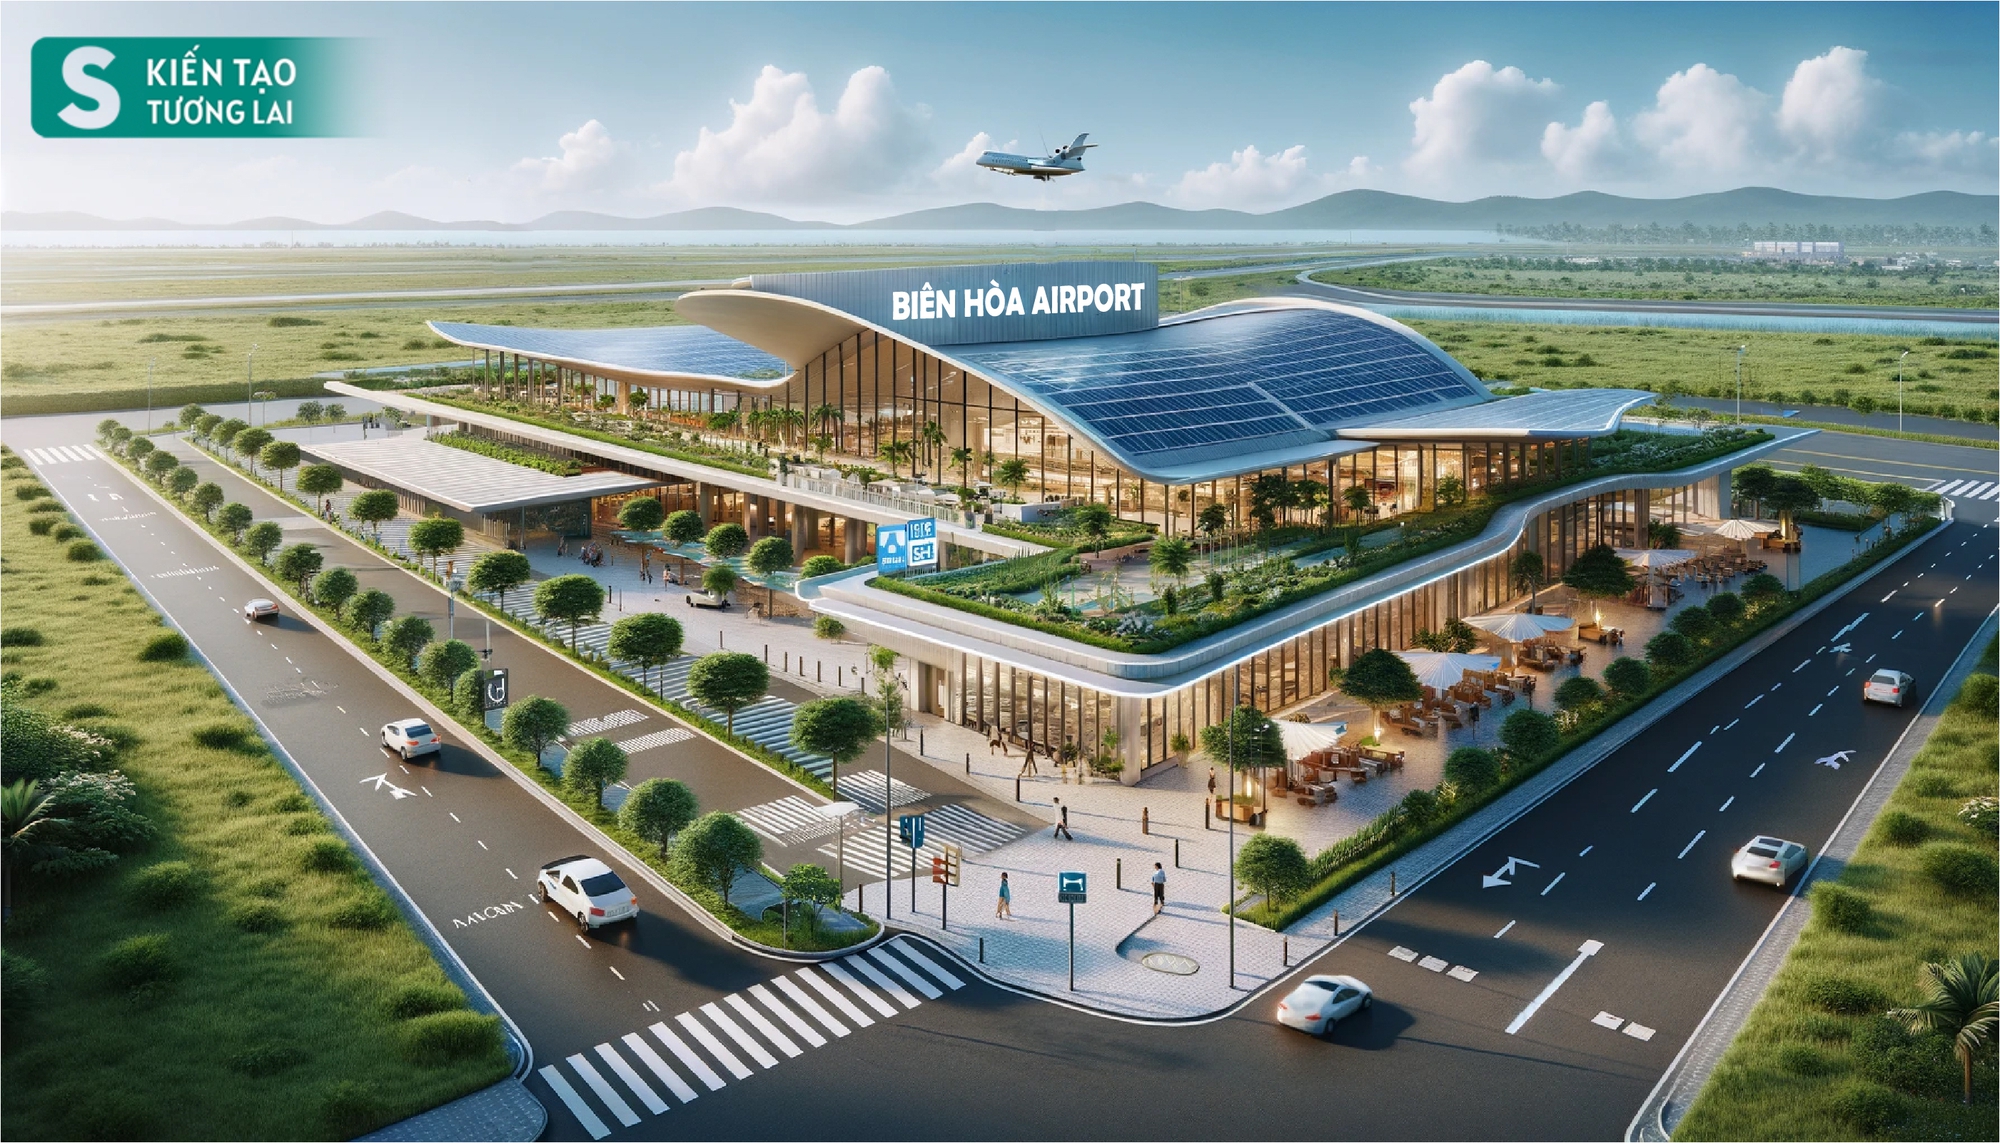 Tỉnh đầu tiên ở Việt Nam sở hữu 2 sân bay dân sự - thương mại, trong đó có dự án 16 tỷ USD lớn kỷ lục- Ảnh 2.